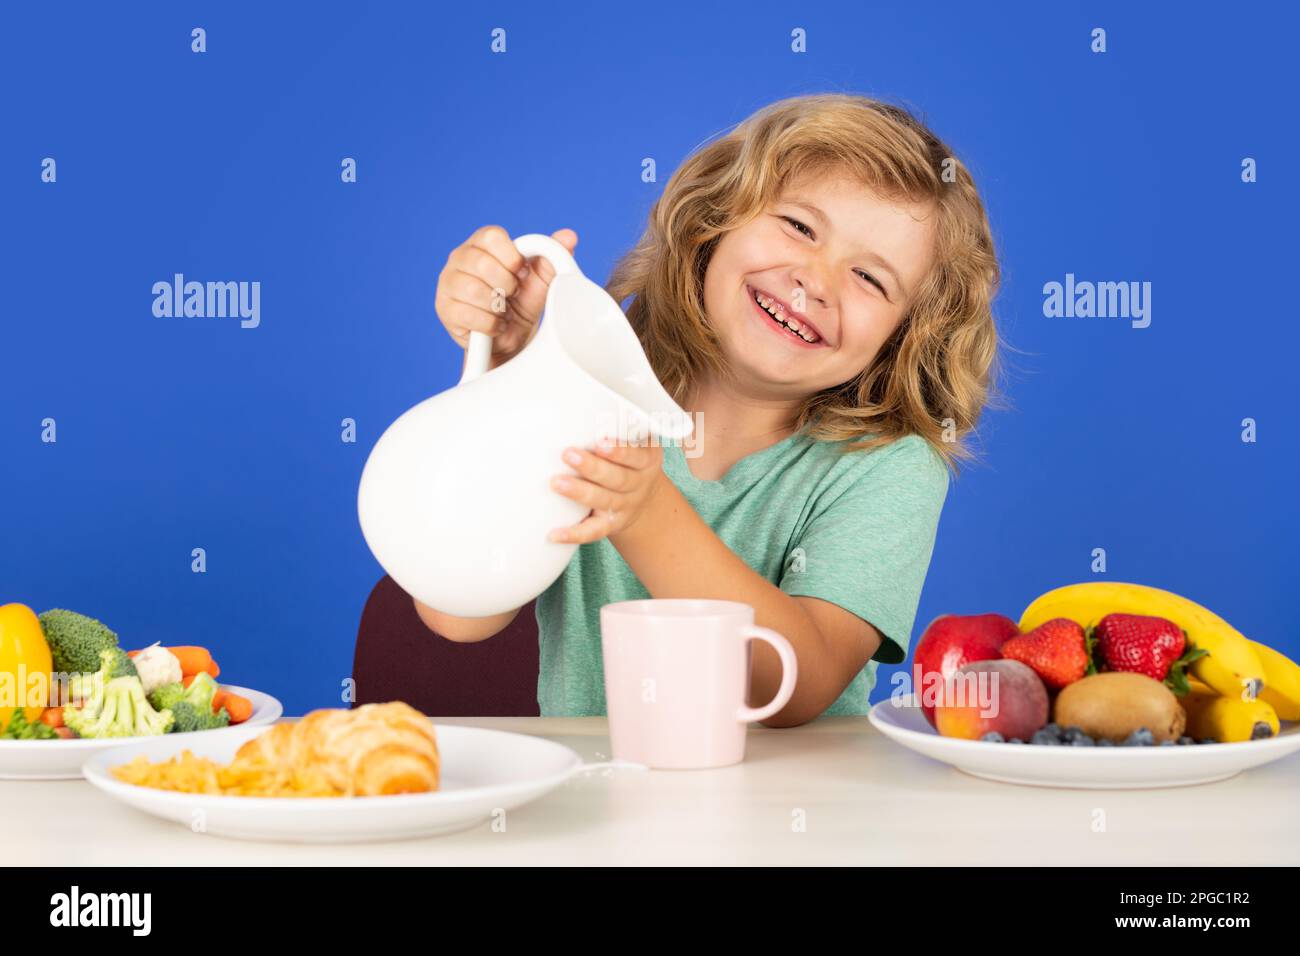 Child drink dairy milk. Cute kid drinking milk on blue background. Stock Photo